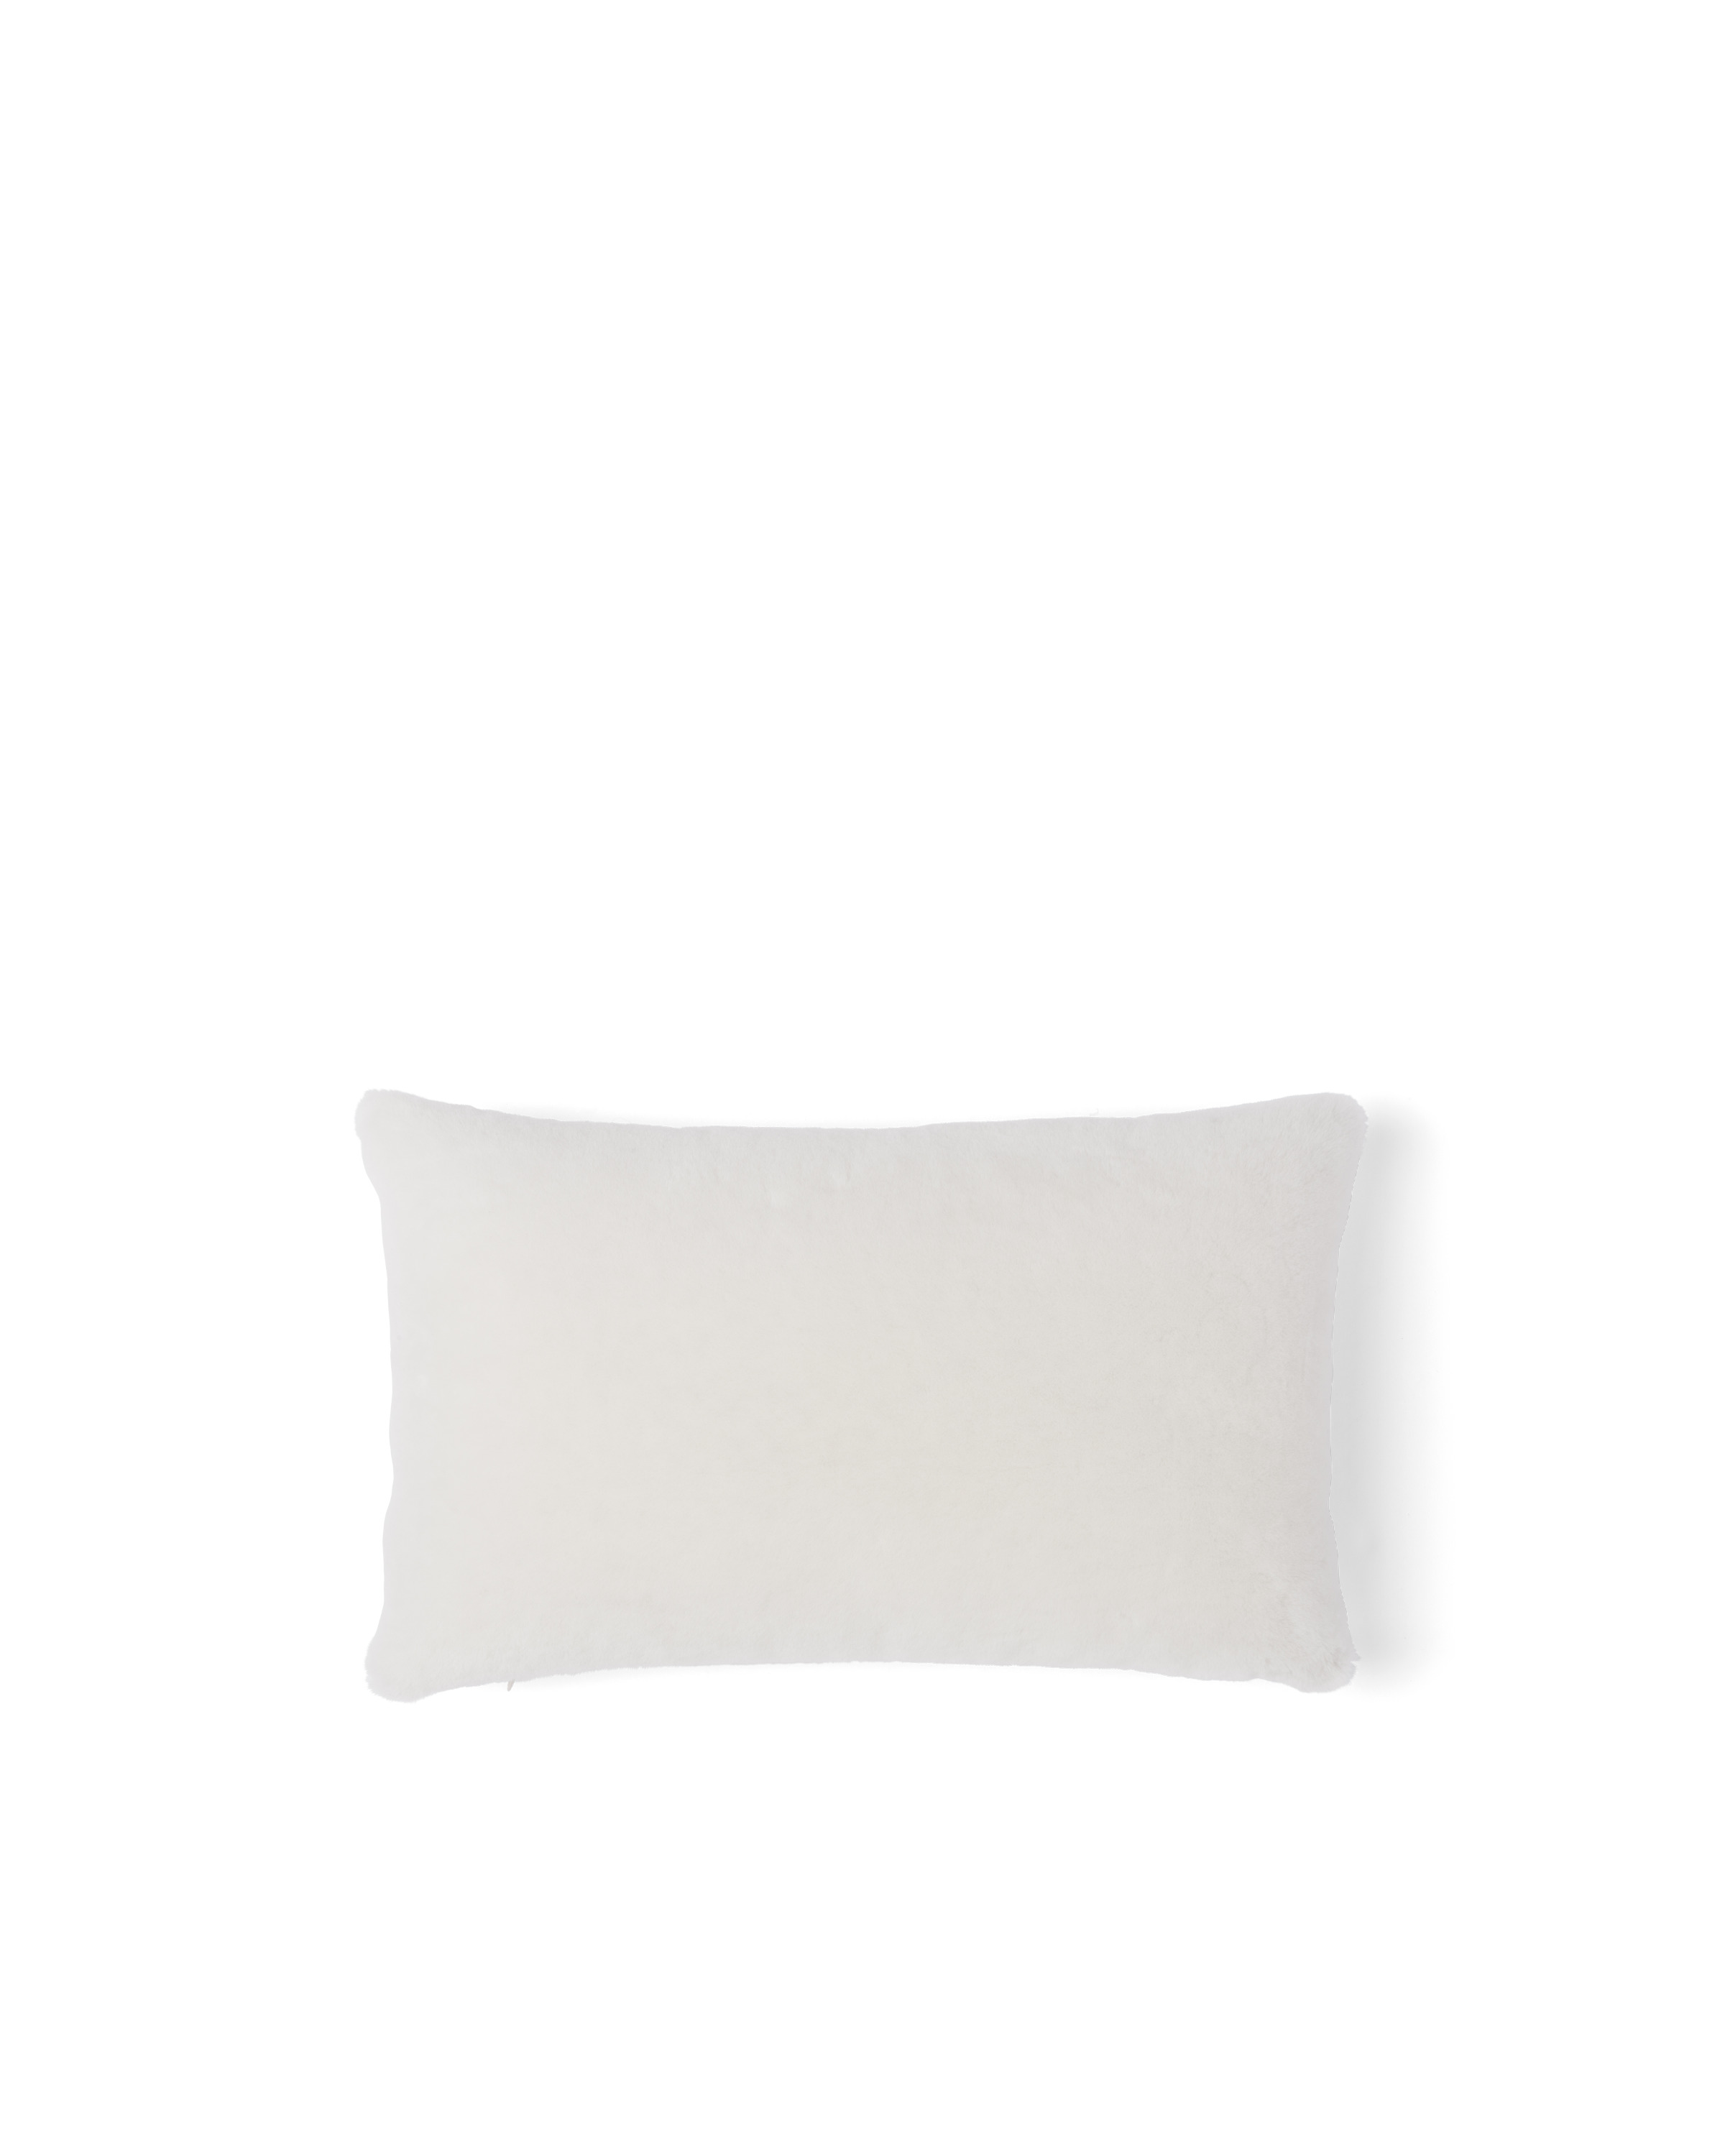 Sheepskin pillow - 3